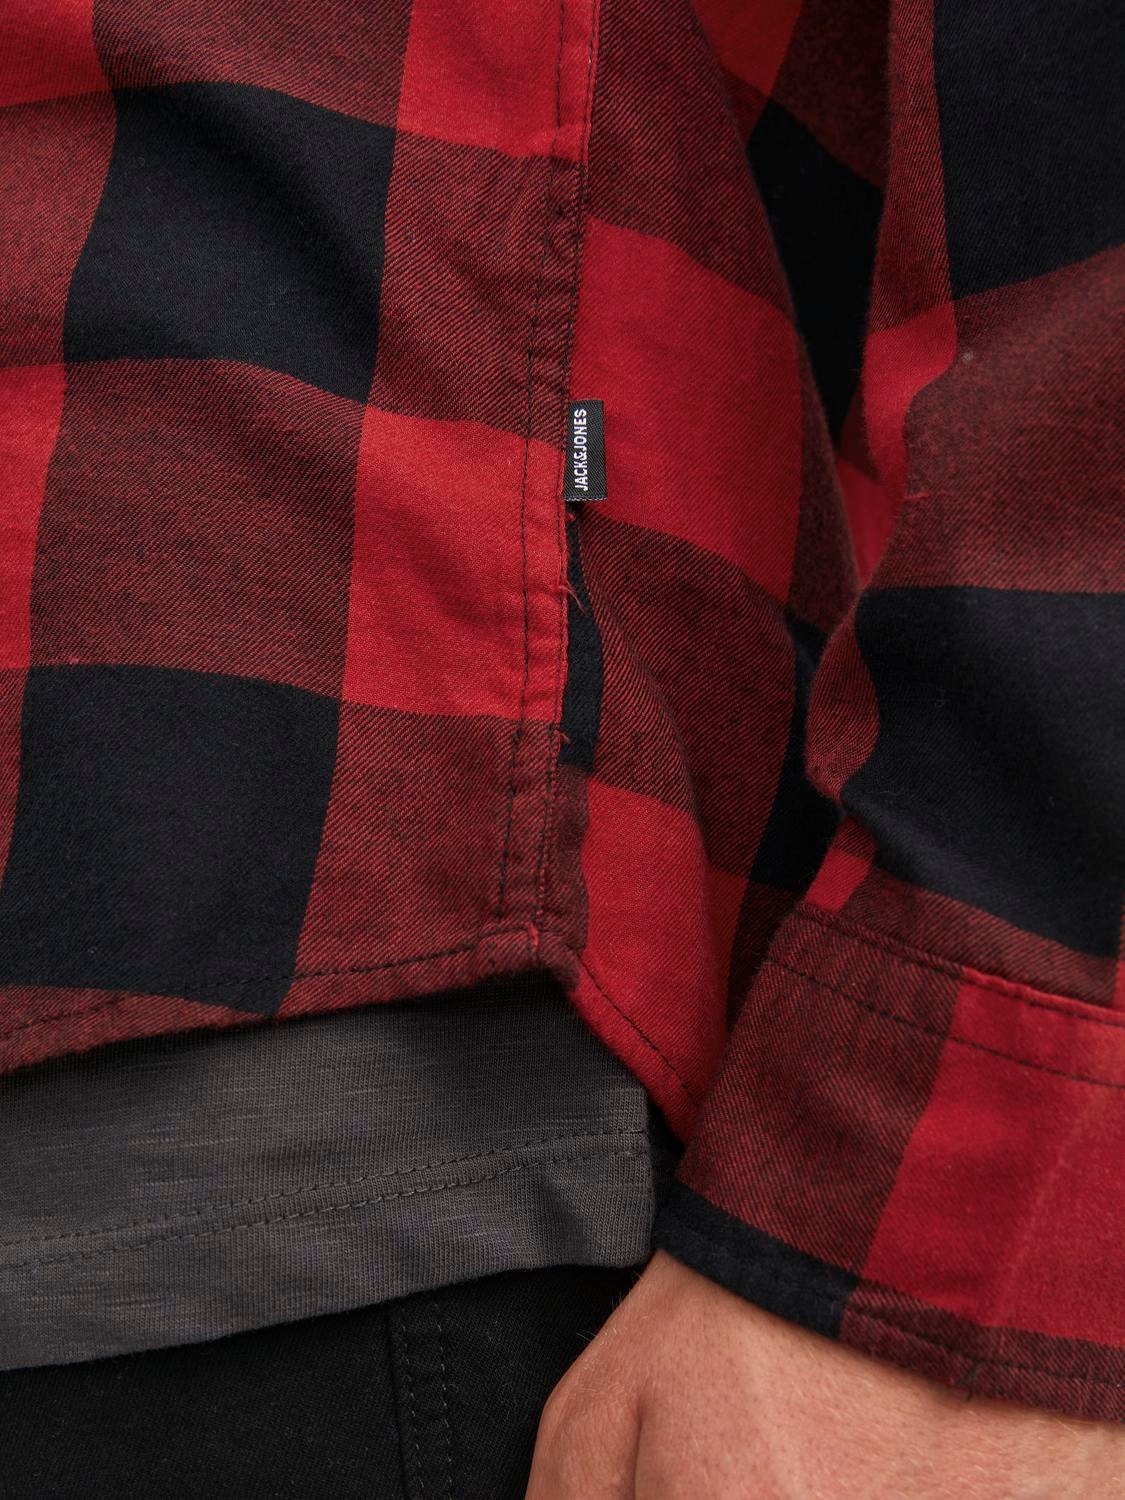 Jack & Jones Slim Fit Karo marškiniai -Brick Red - 12181602